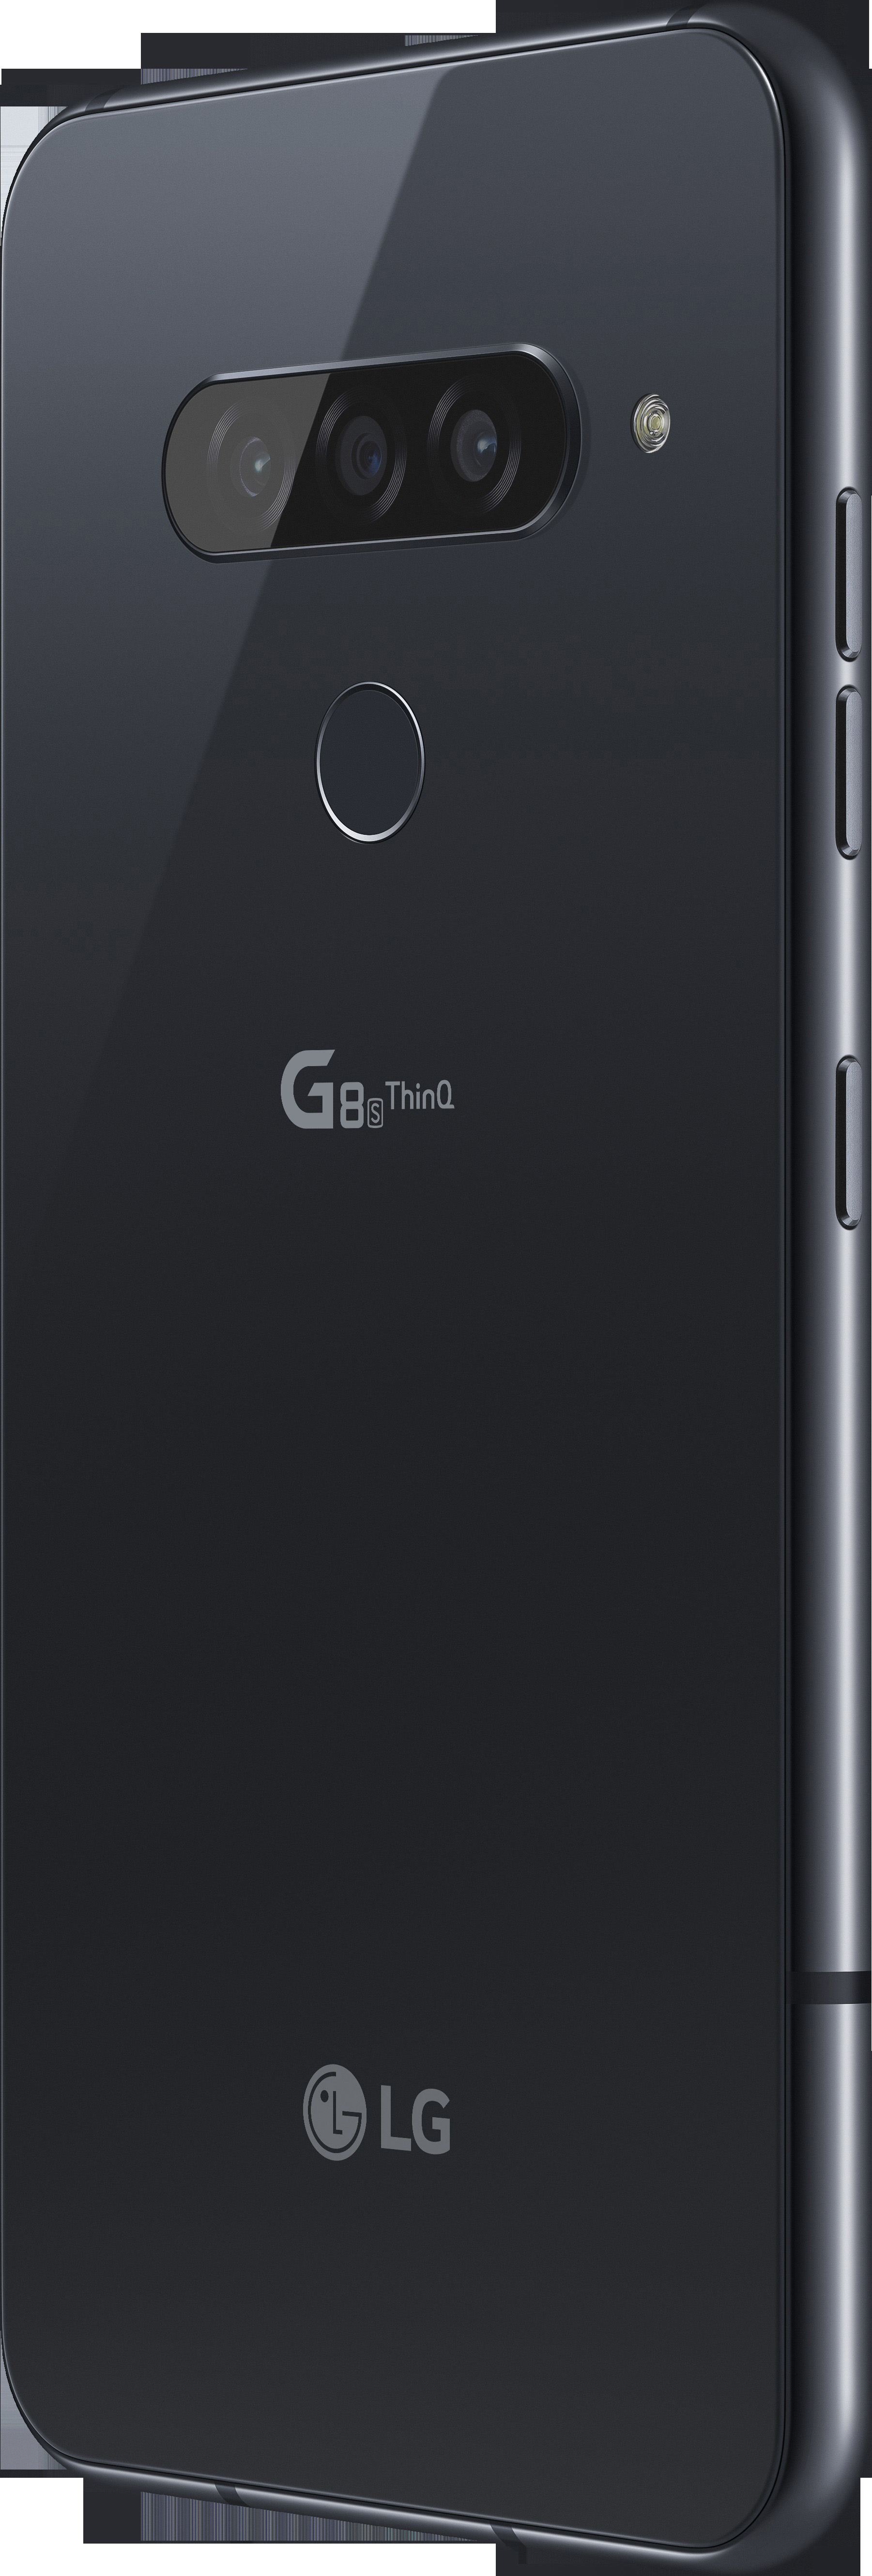 Dual Black Mirror SIM GB ThinQ LG G8S 128